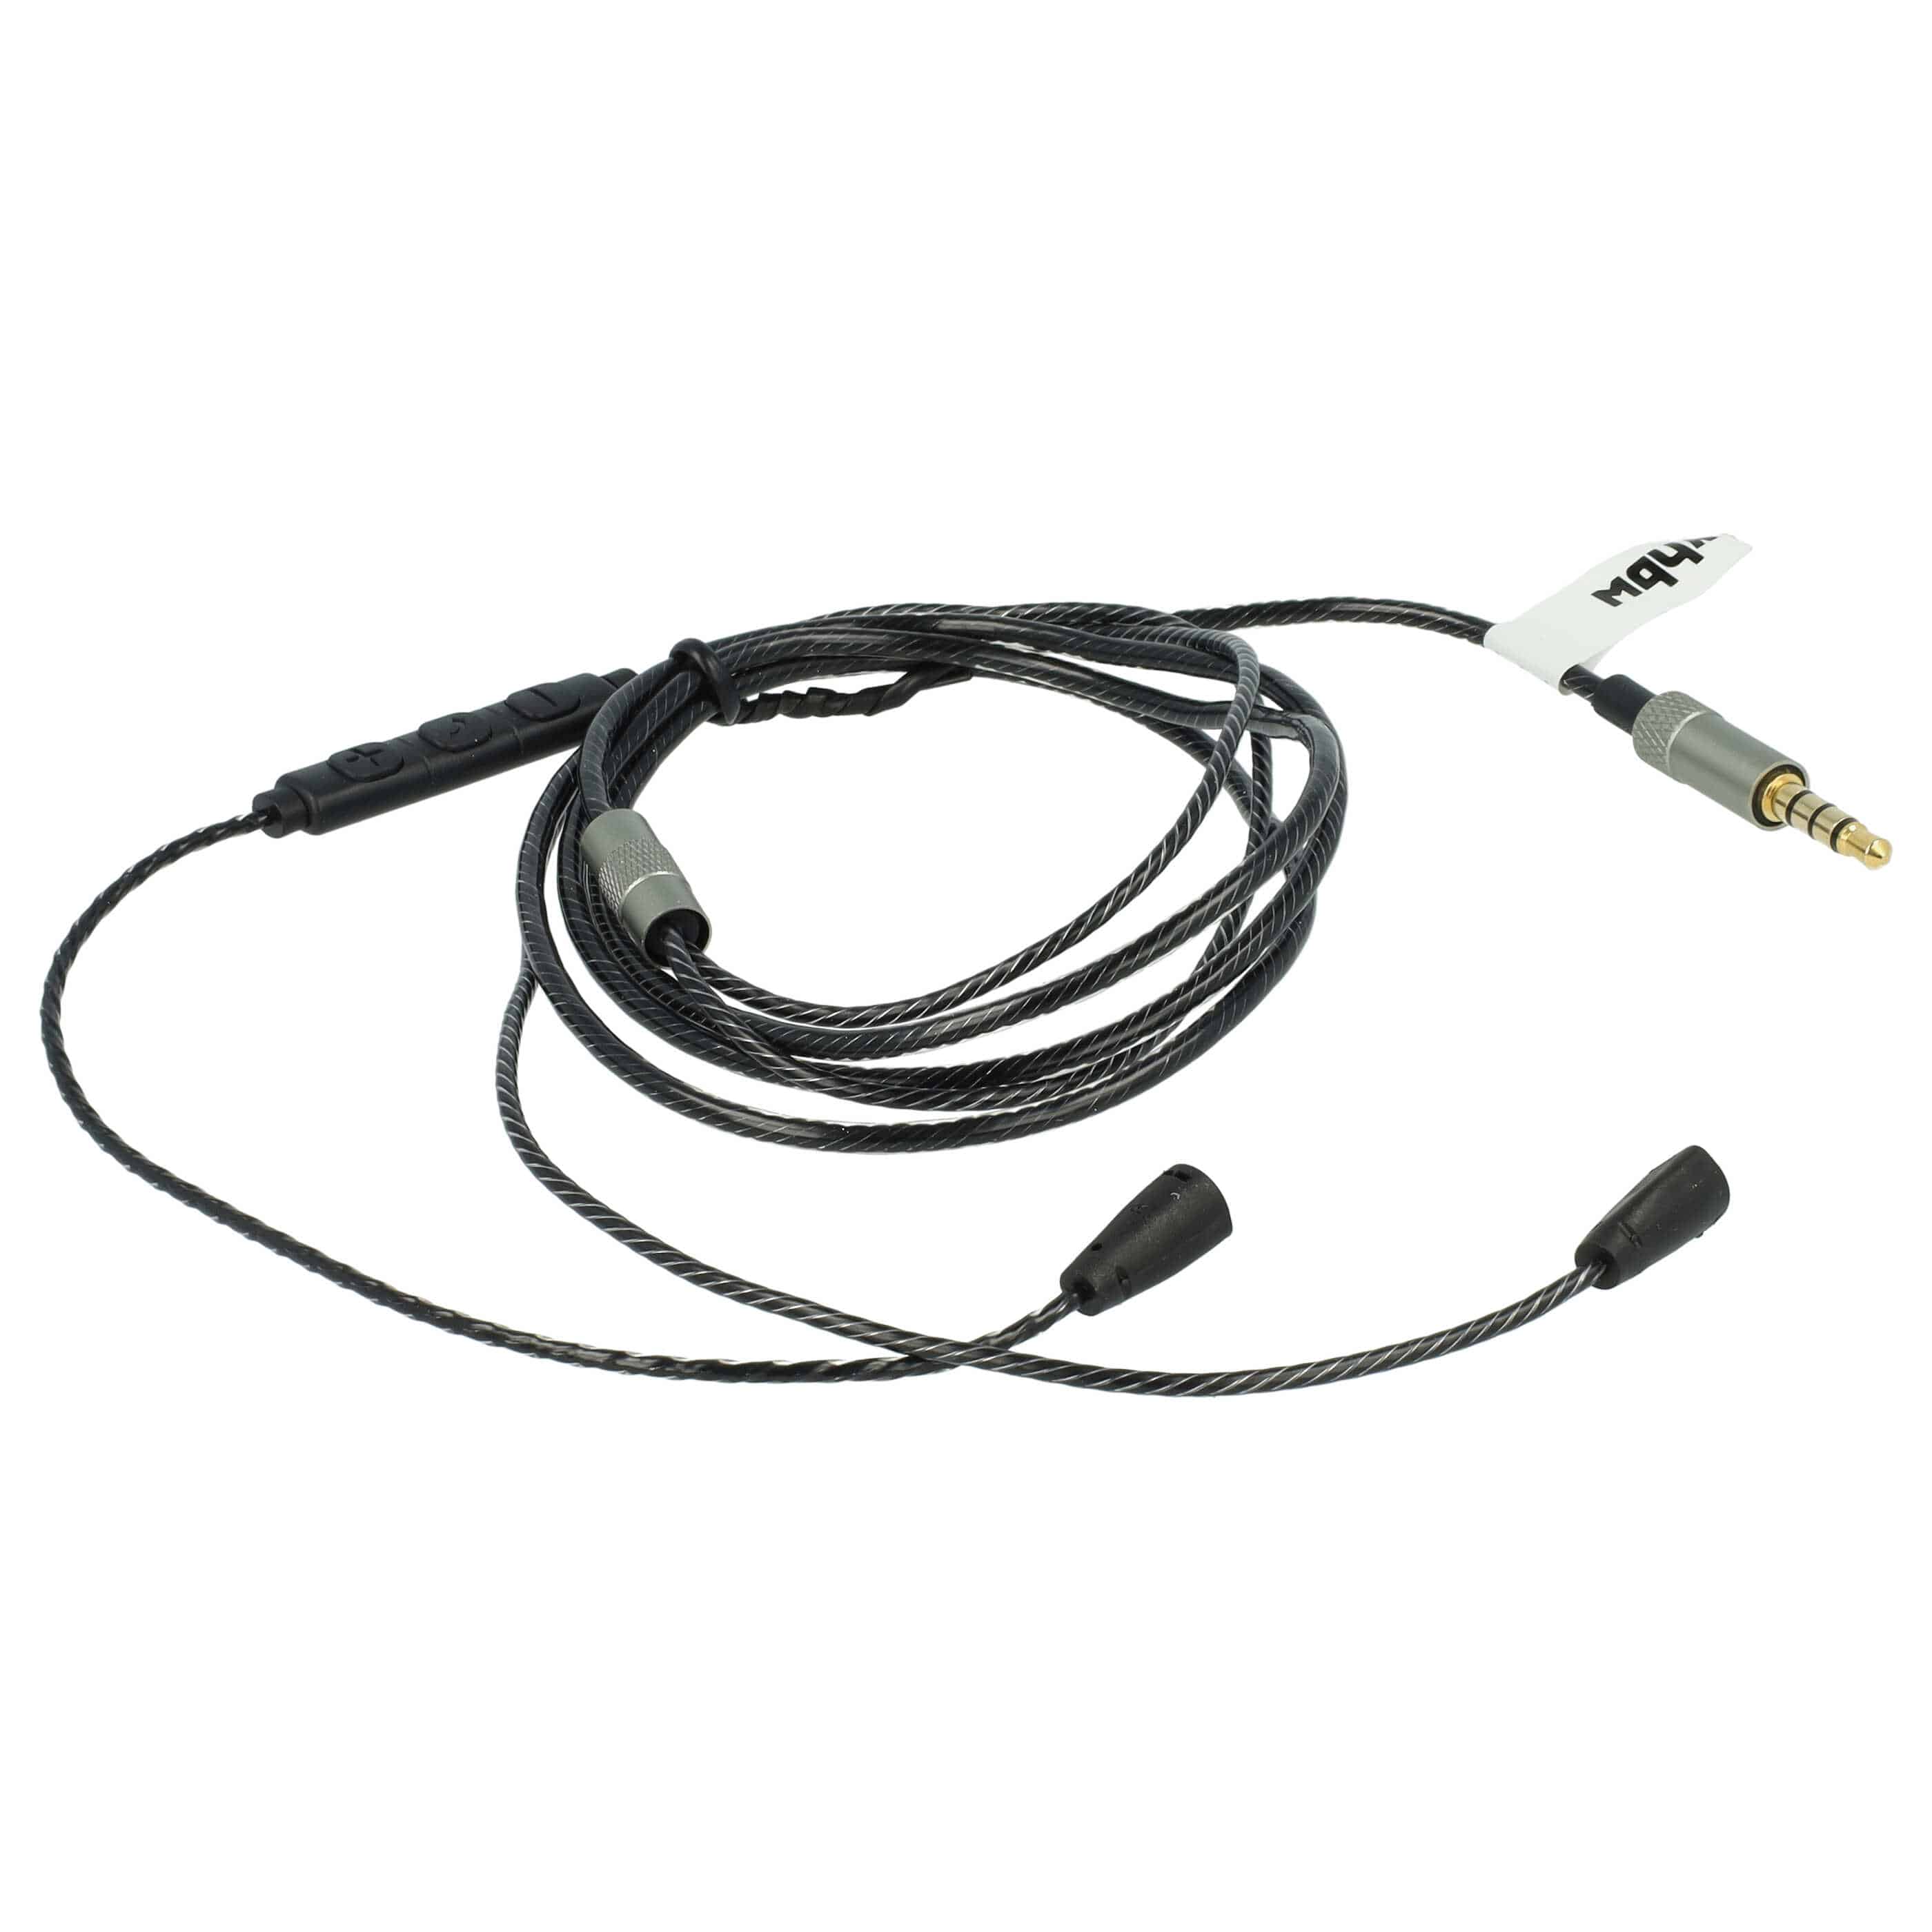 Cable audio AUX a conector jack de 3,5 mm para auriculares Sennheiser IE8, IE80